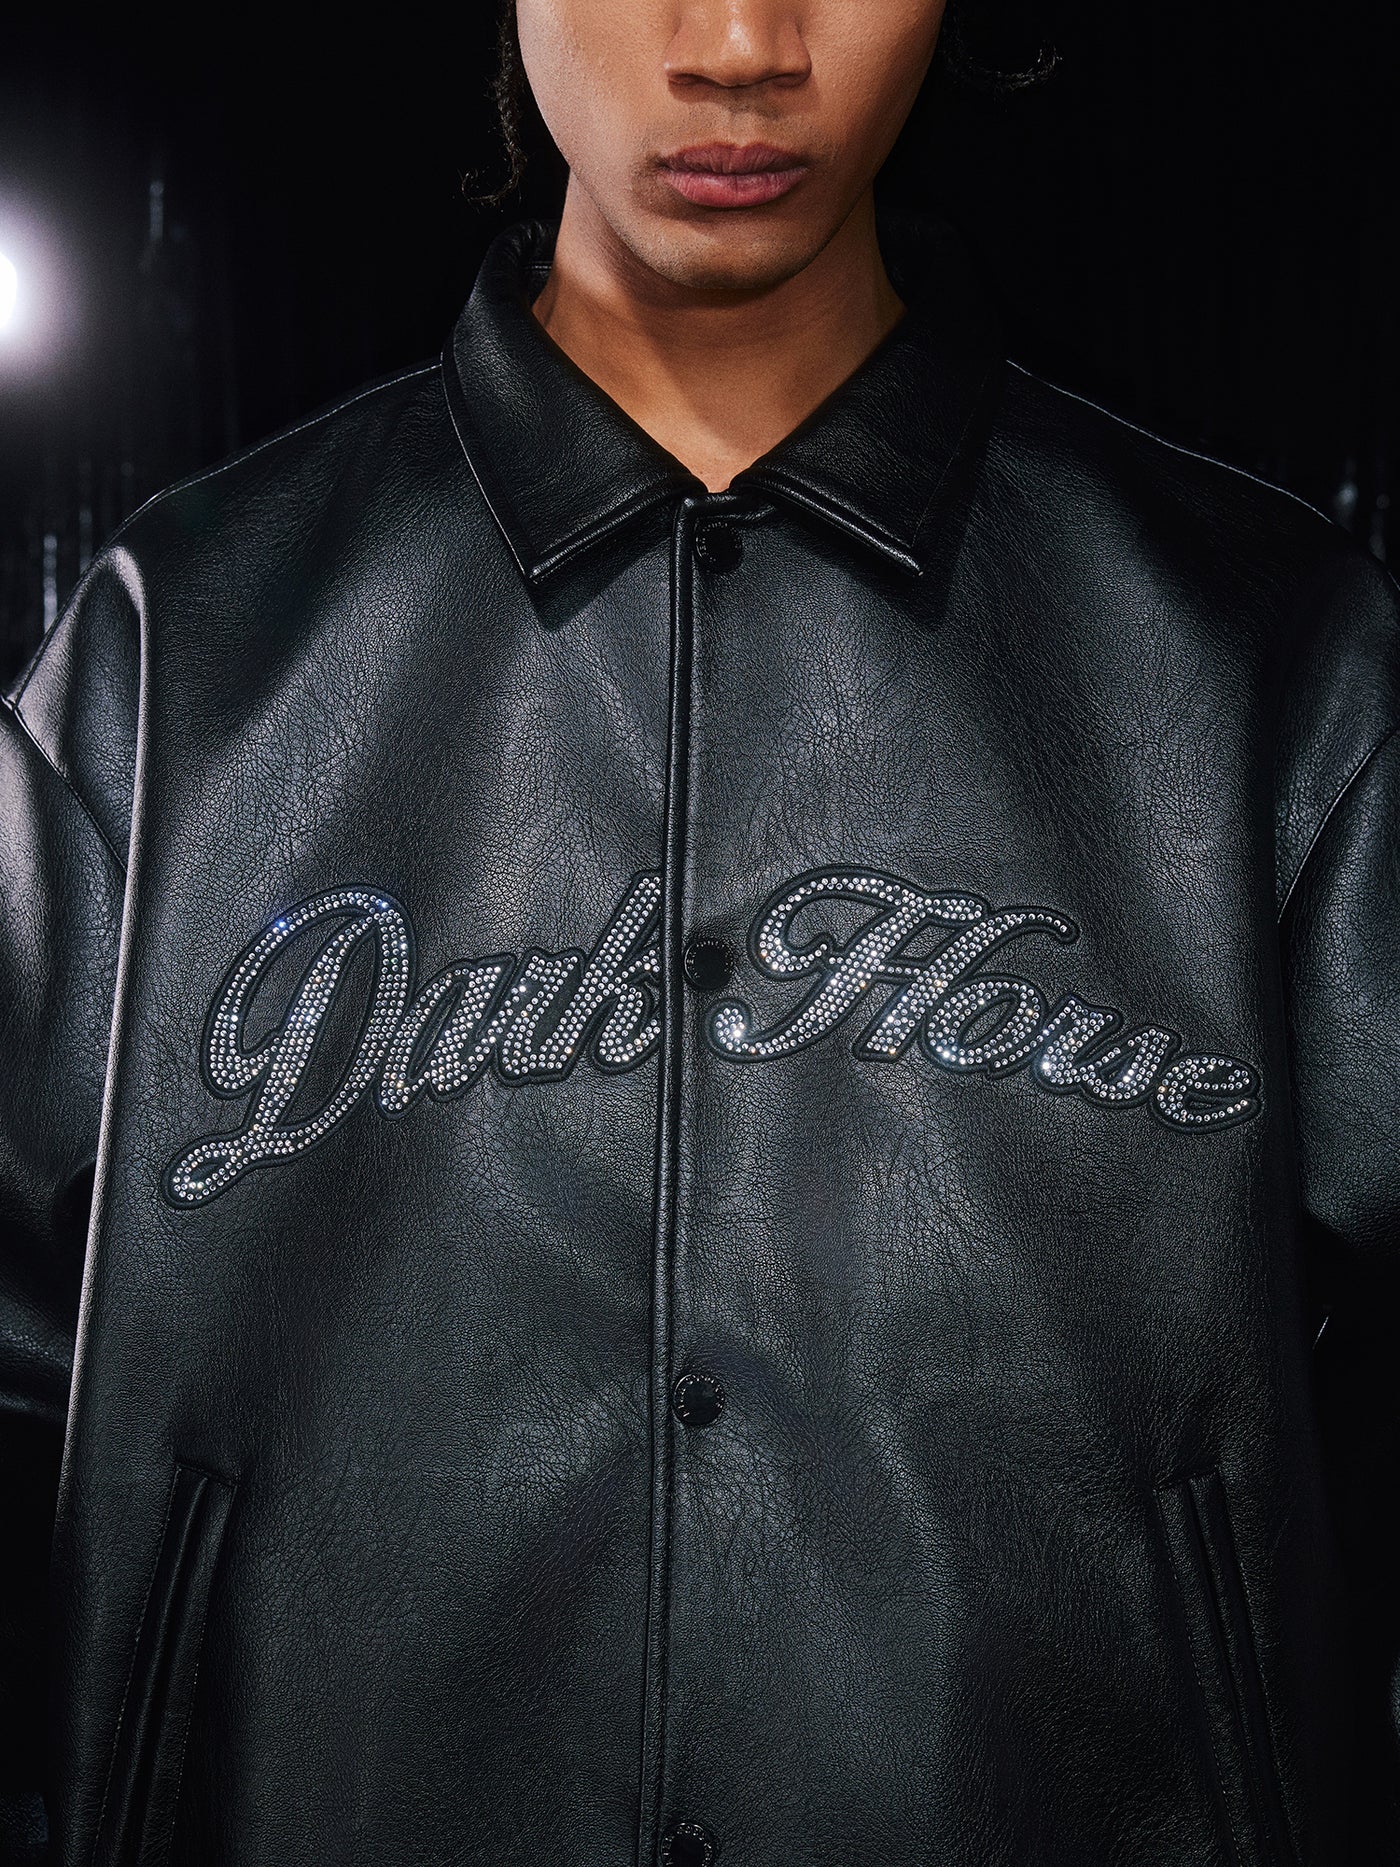 DONCARE(AFGK) “Dark horse all leather jacket”